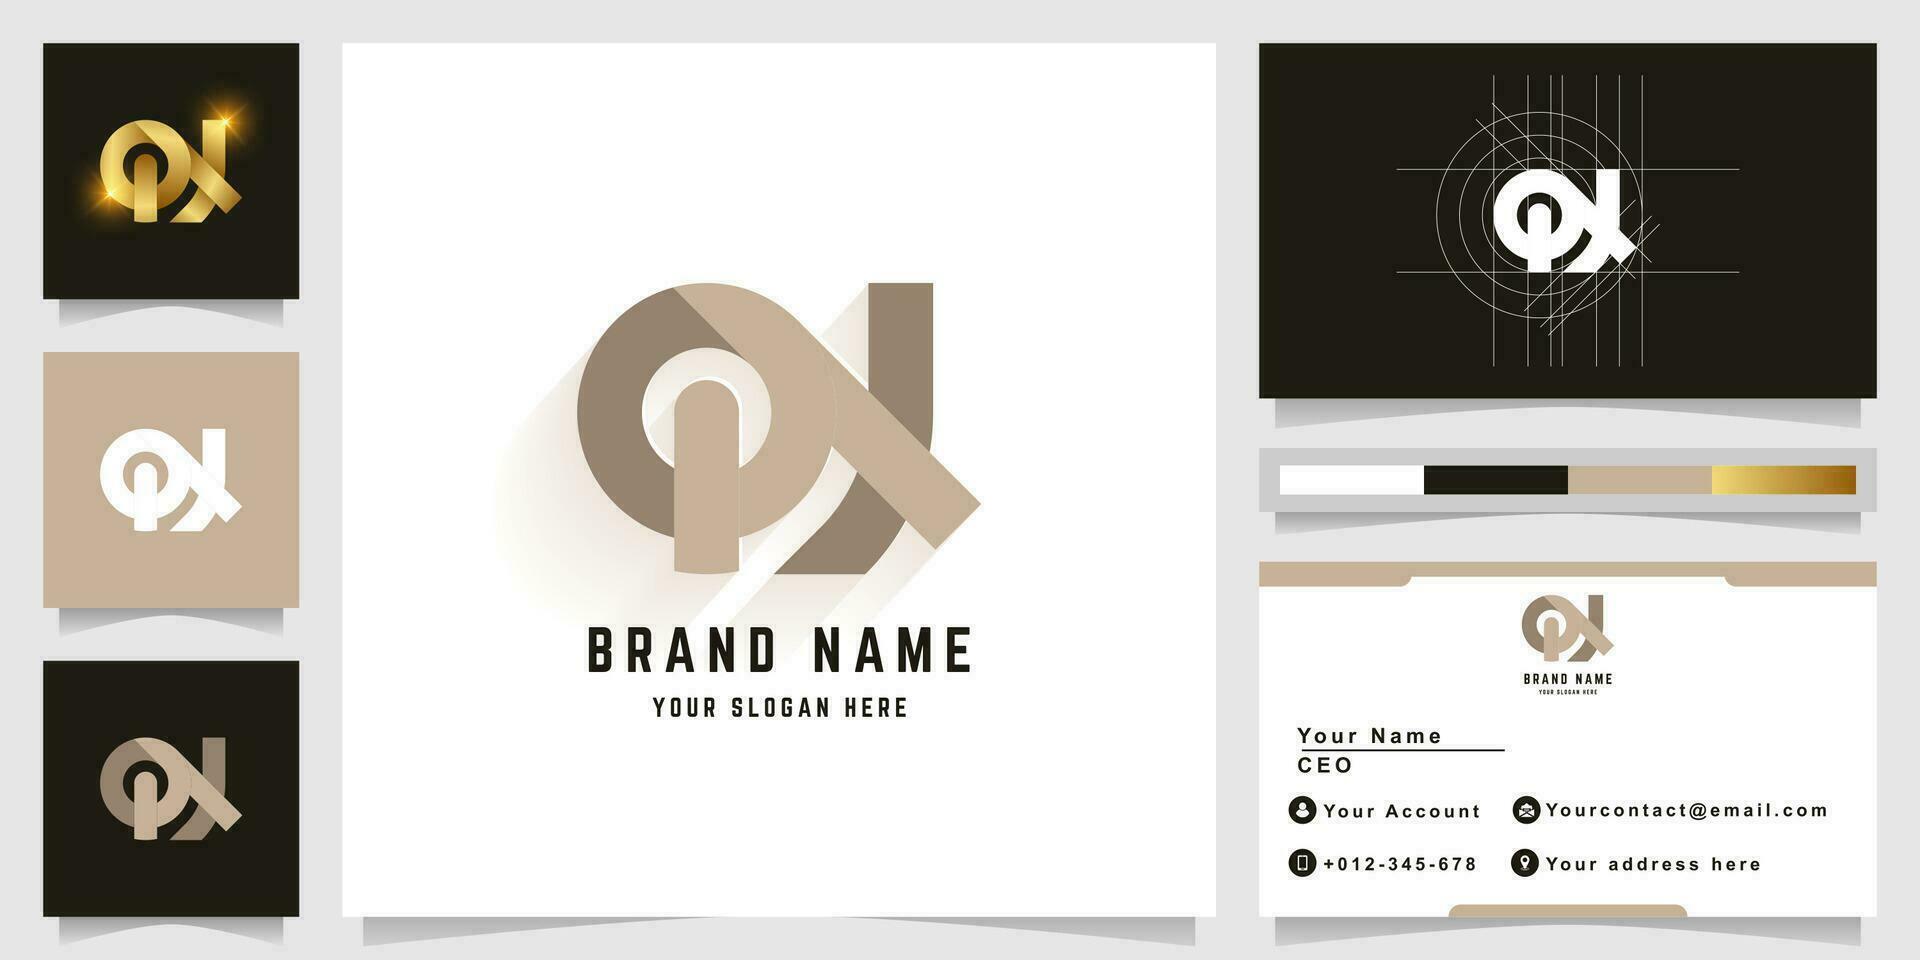 brief qx of qn monogram logo met bedrijf kaart ontwerp vector